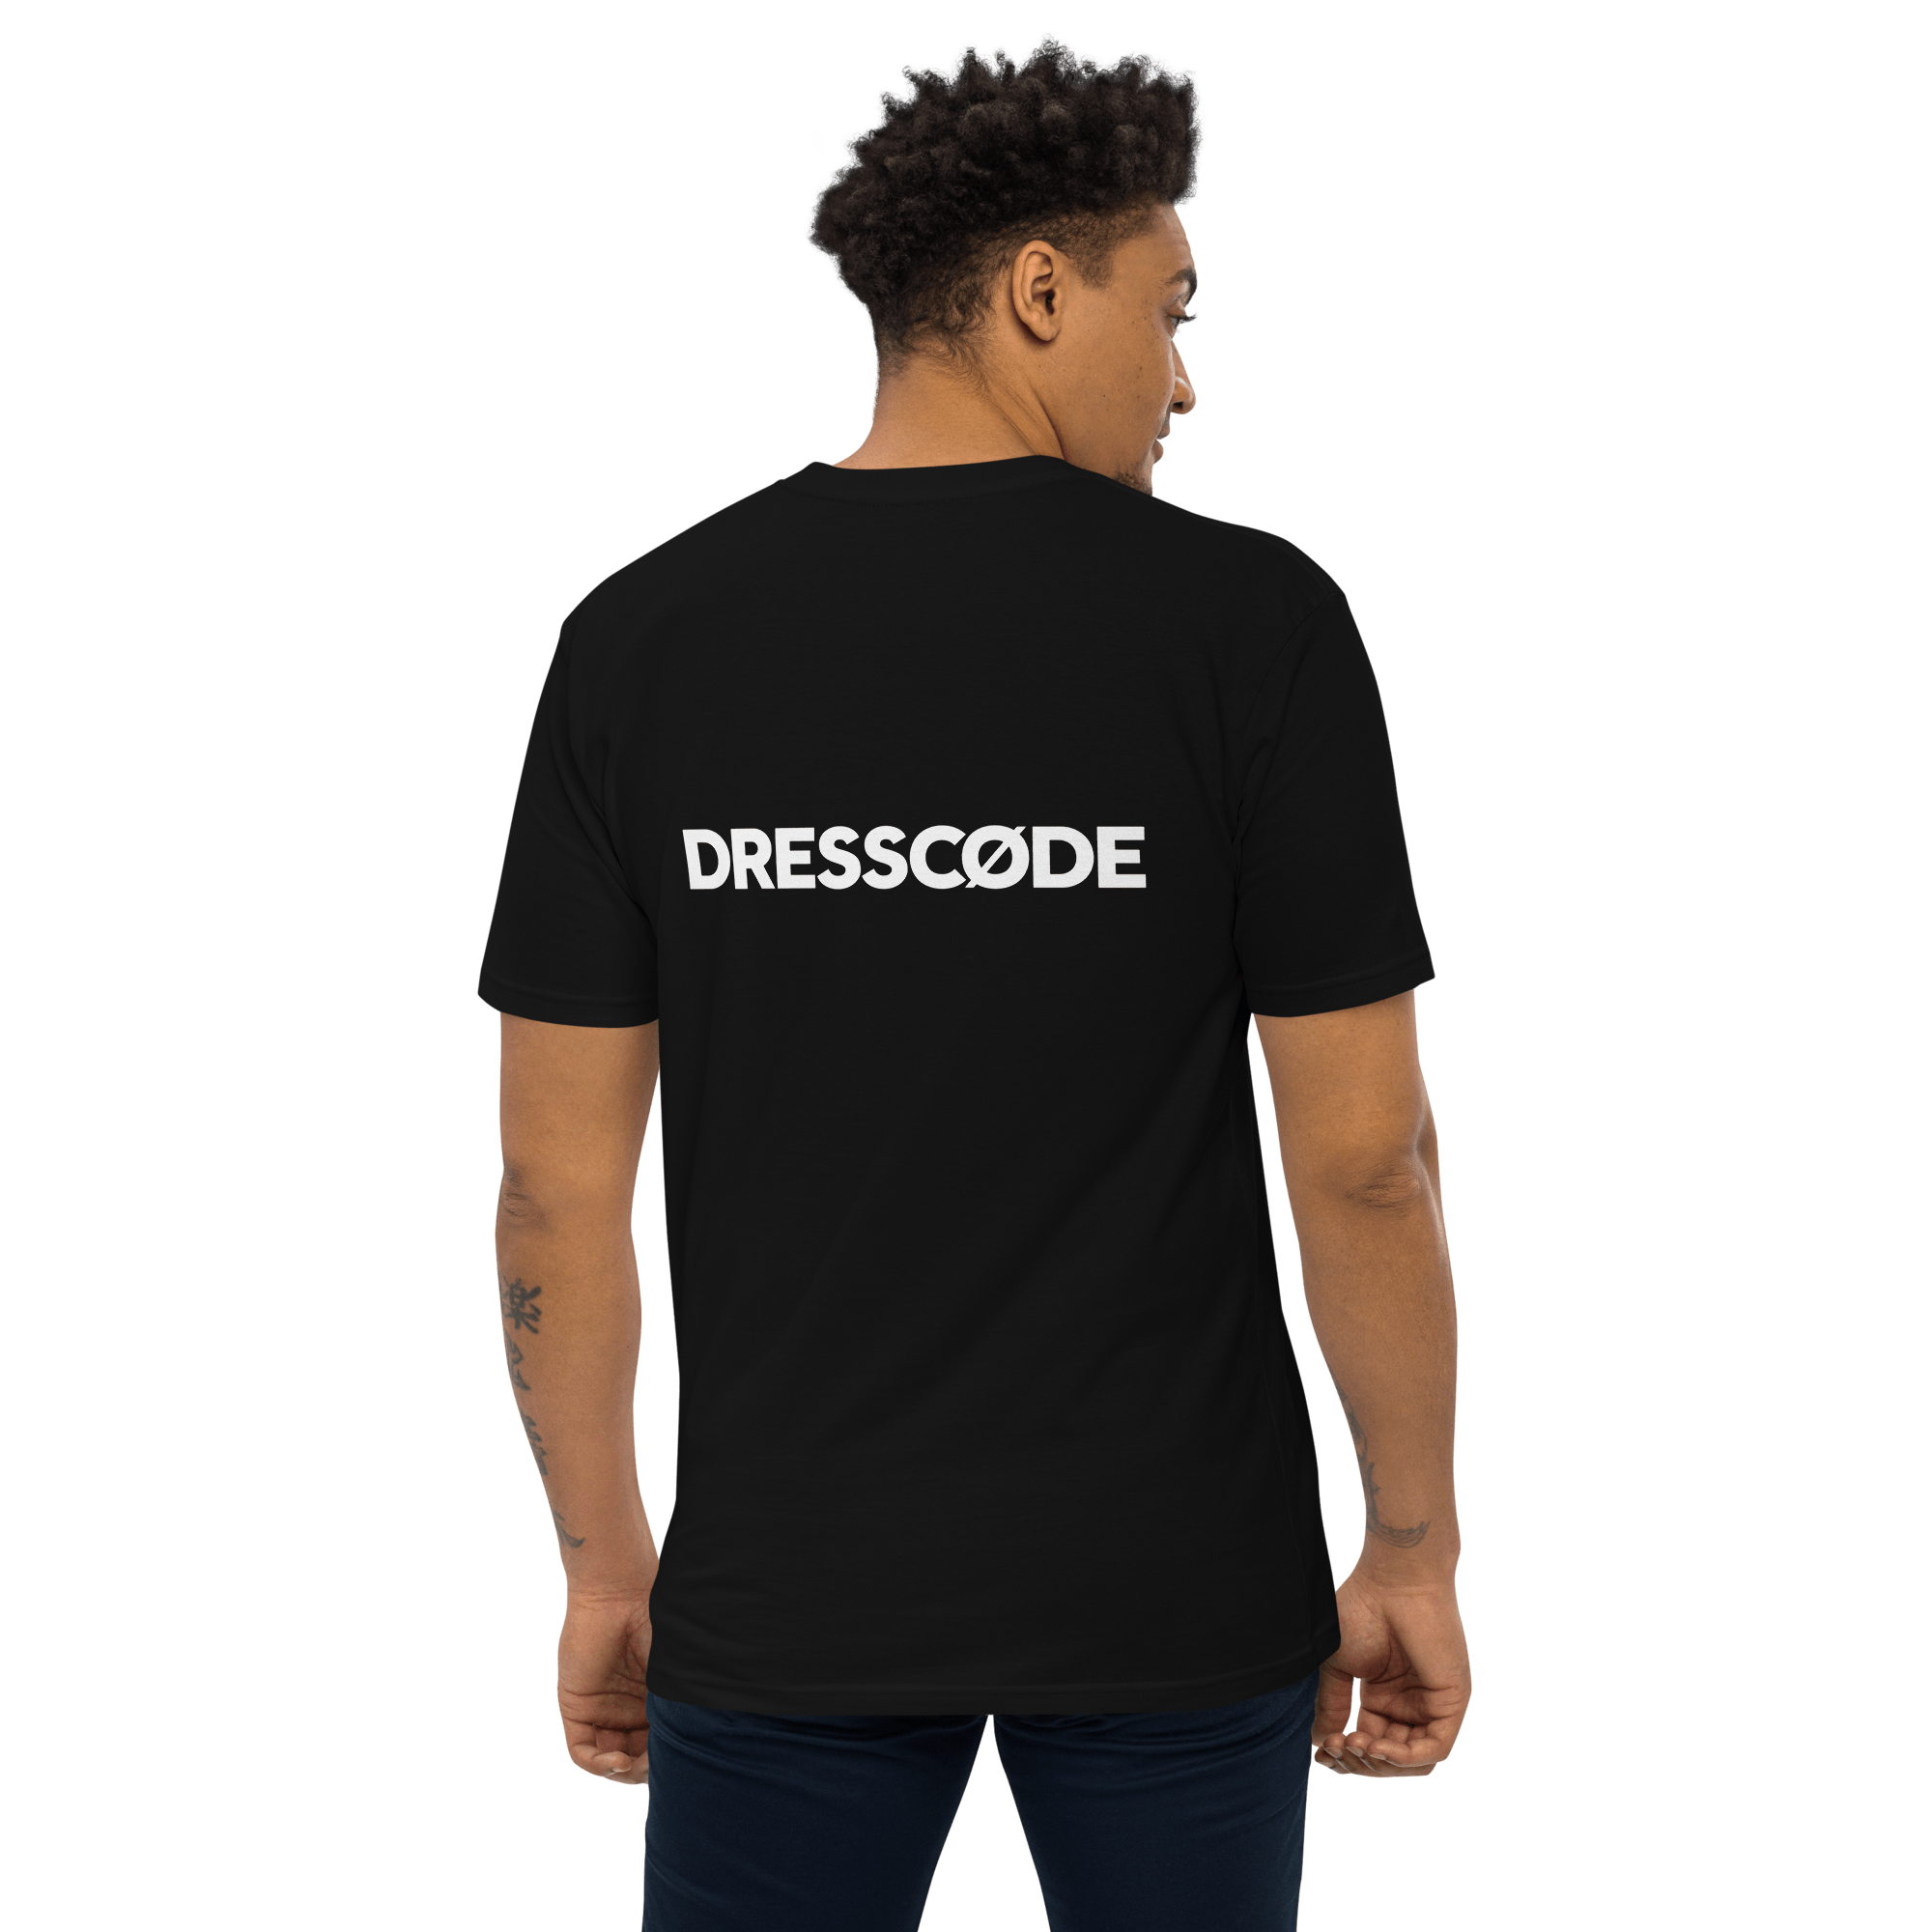 DRESSCODE T-Shirt Dream Sequence 5